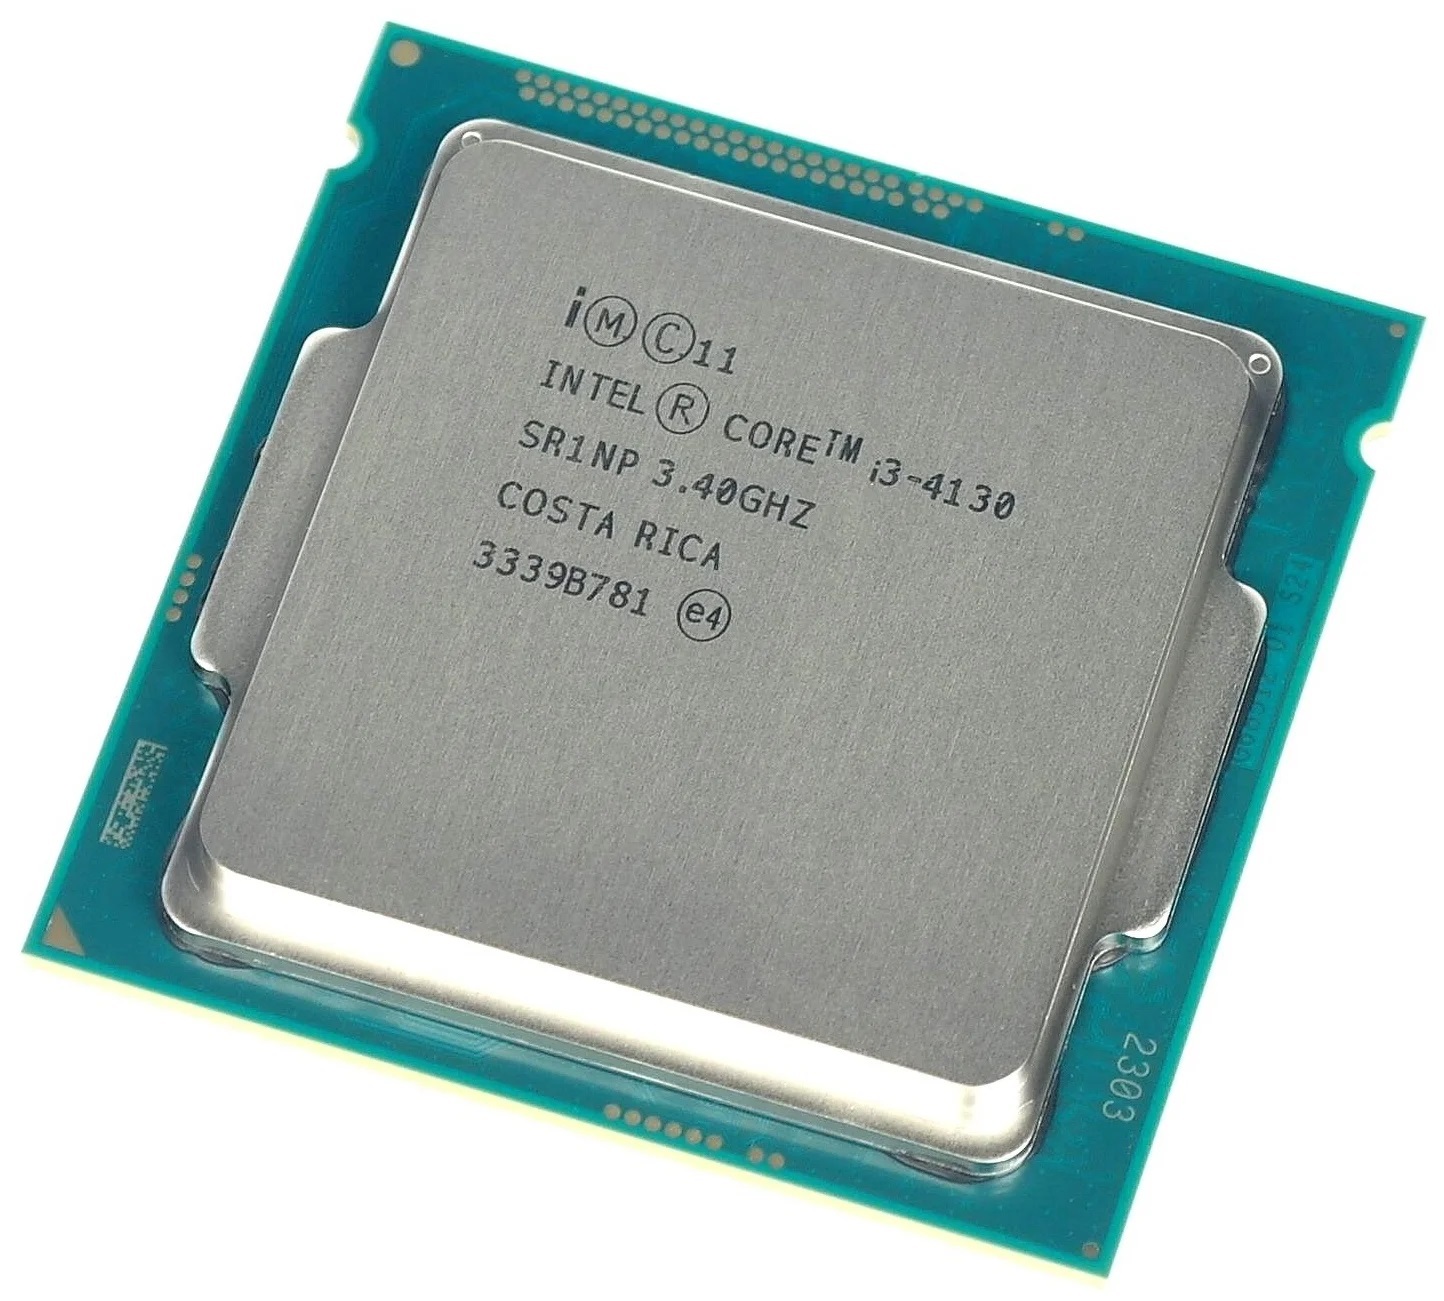 Купить интел i3. Intel Celeron g1820. Процессор Intel Celeron g1840 OEM. Intel Celeron 2.70GHZ. Процессор Intel Celeron g1850 Haswell.